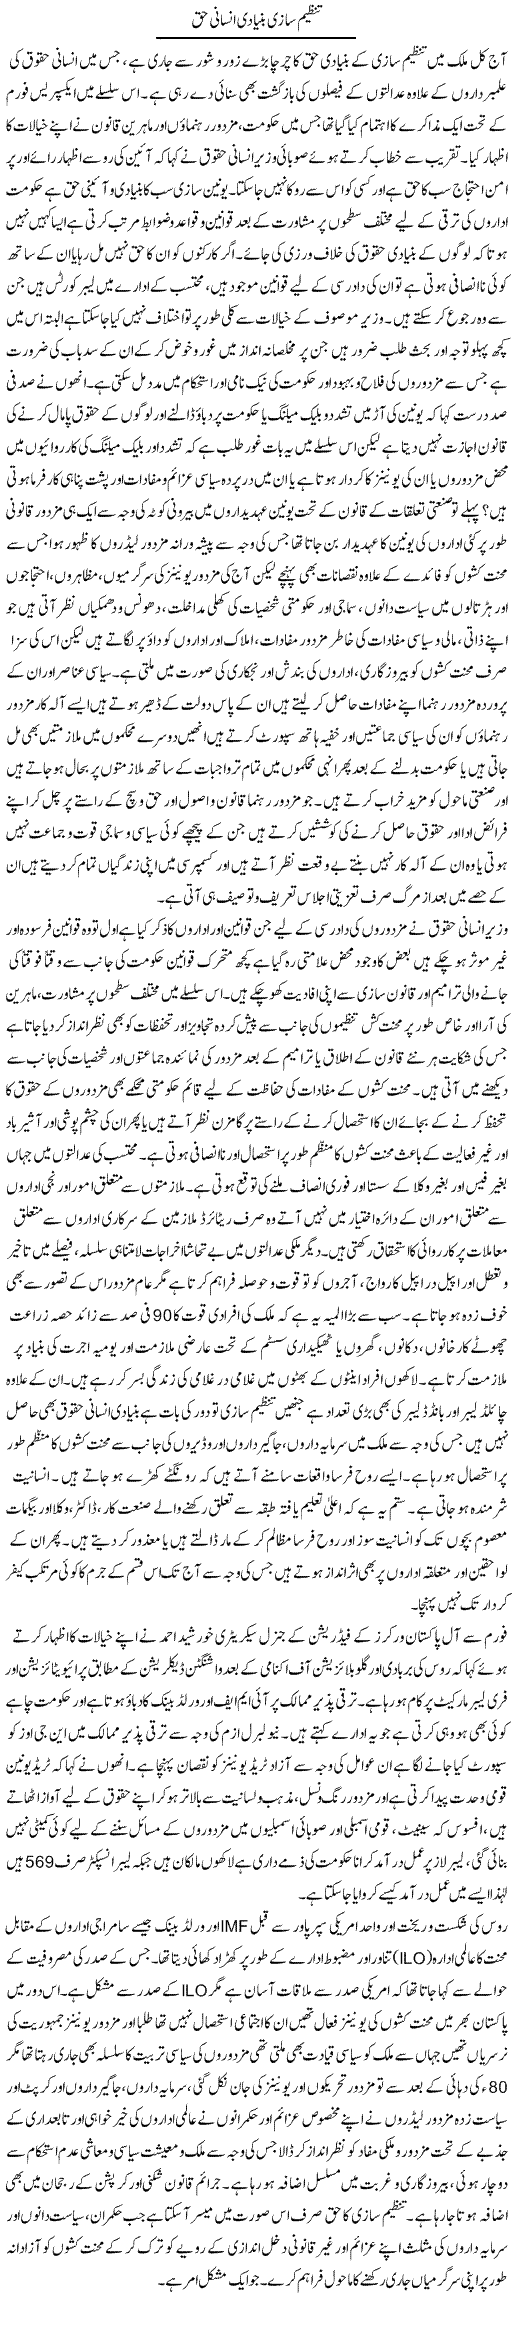 Tanzeem Saazi Bunyadi Insani Haq | Adnan Ashraf | Daily Urdu Columns